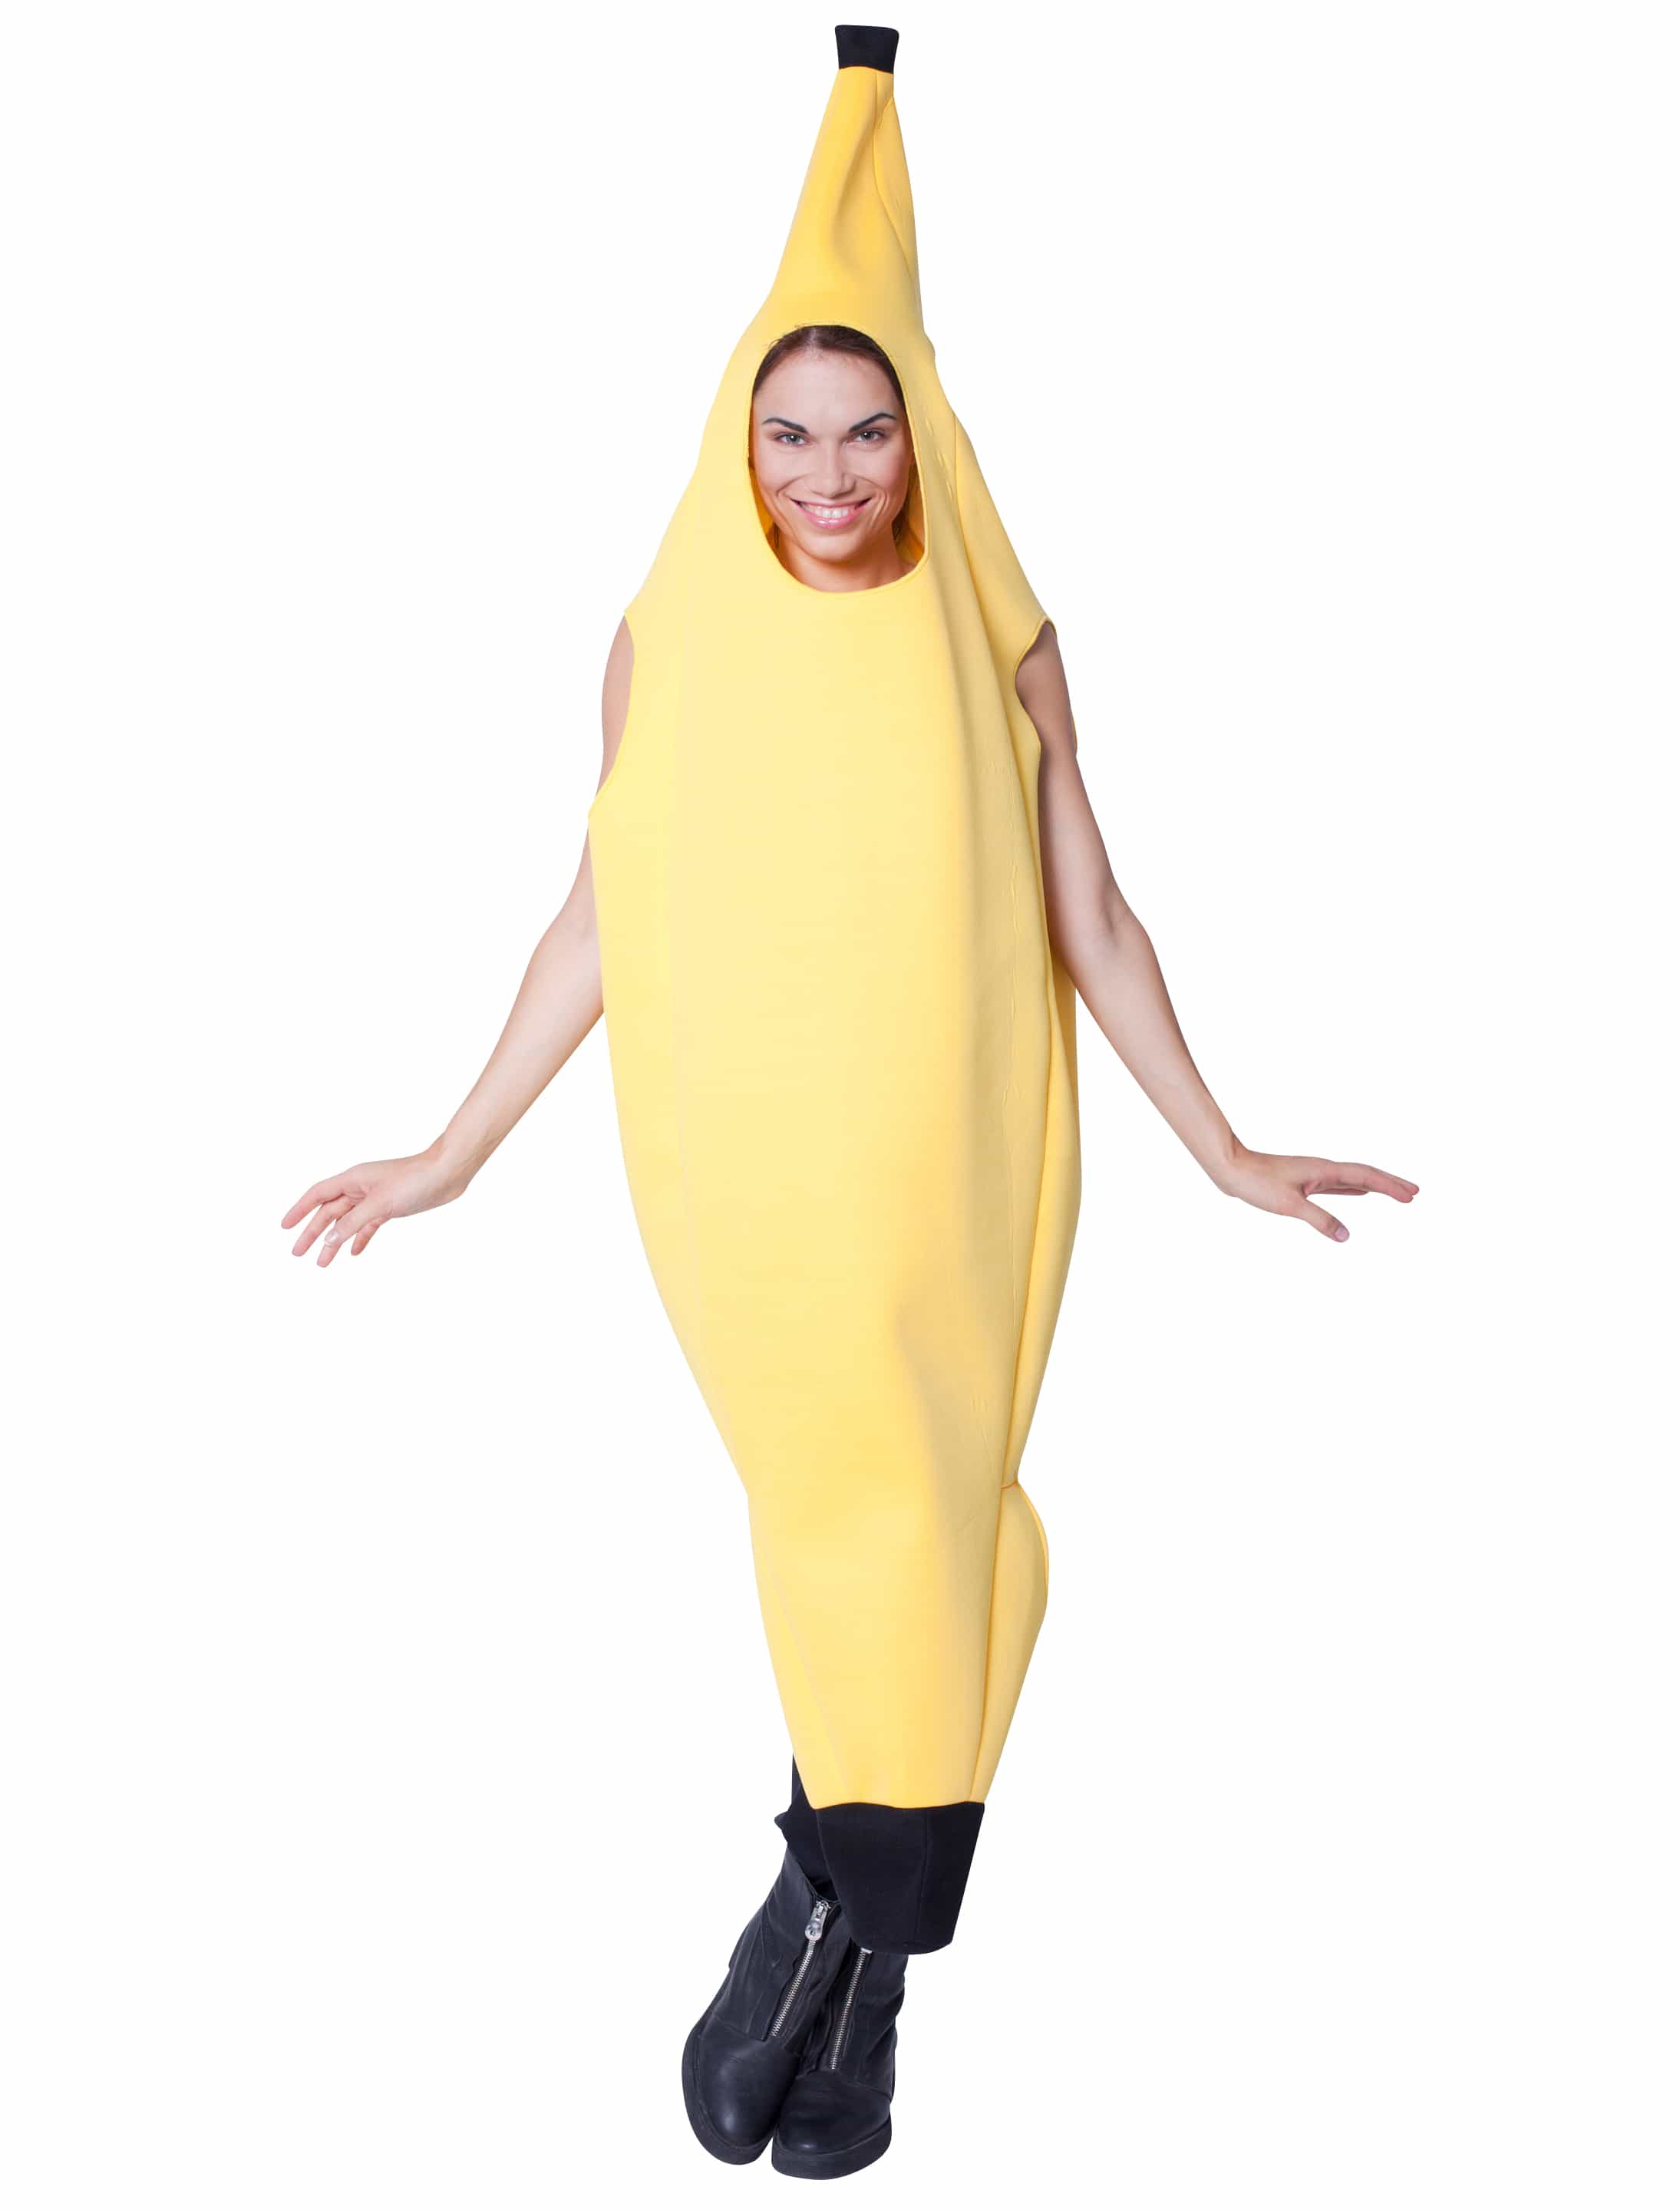 Overall Banane Erwachsene gelb S/M